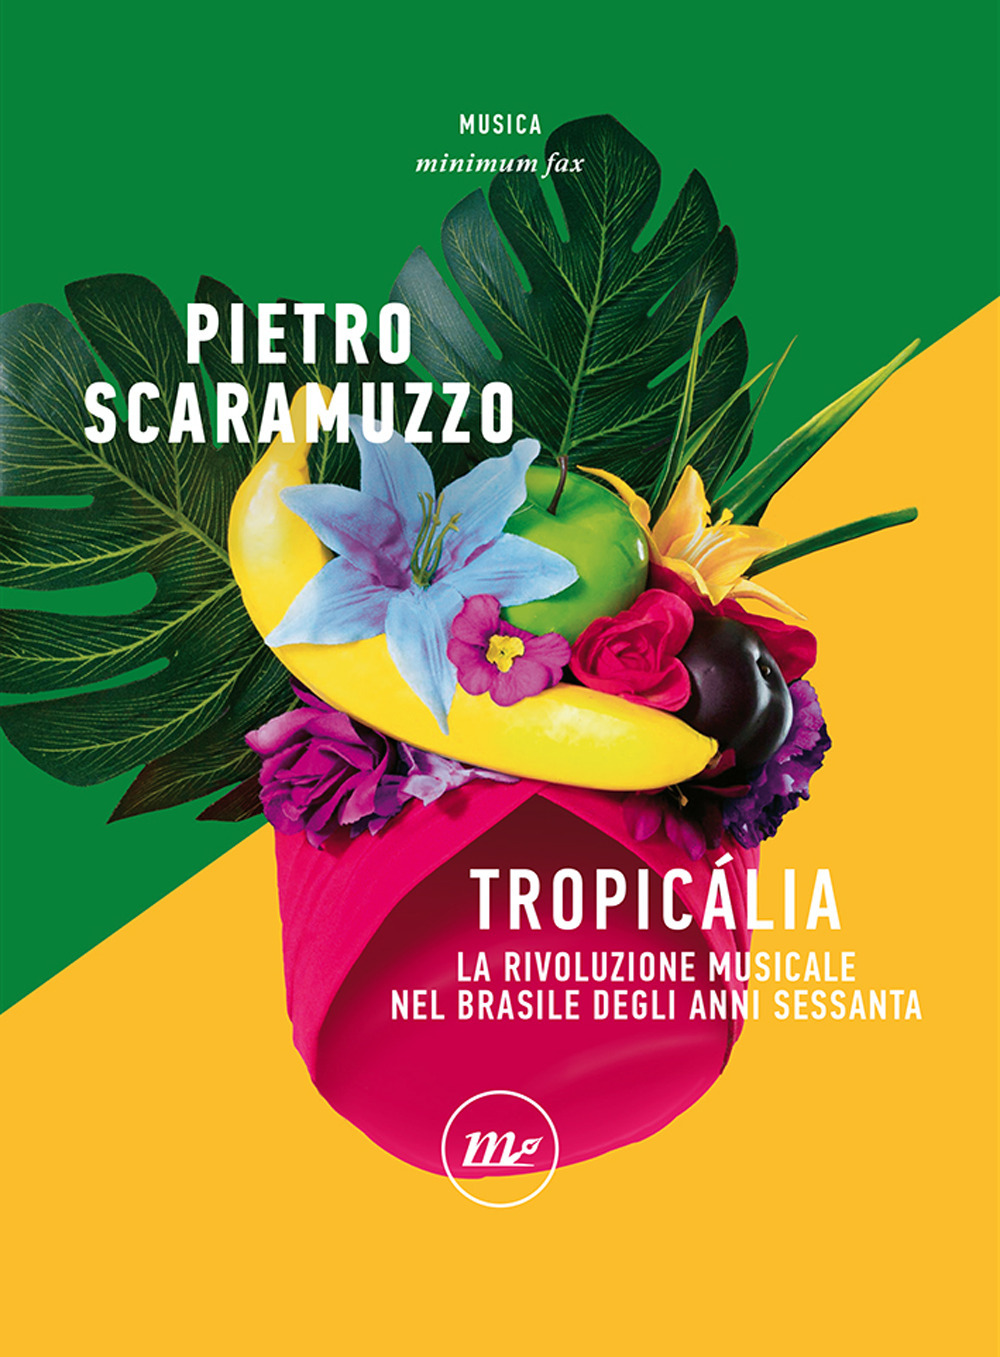 TROPICALIA. LA RIVOLUZIONE MUSICALE NEL BRASILE - Scaramuzzo Pietro - 9788833892542